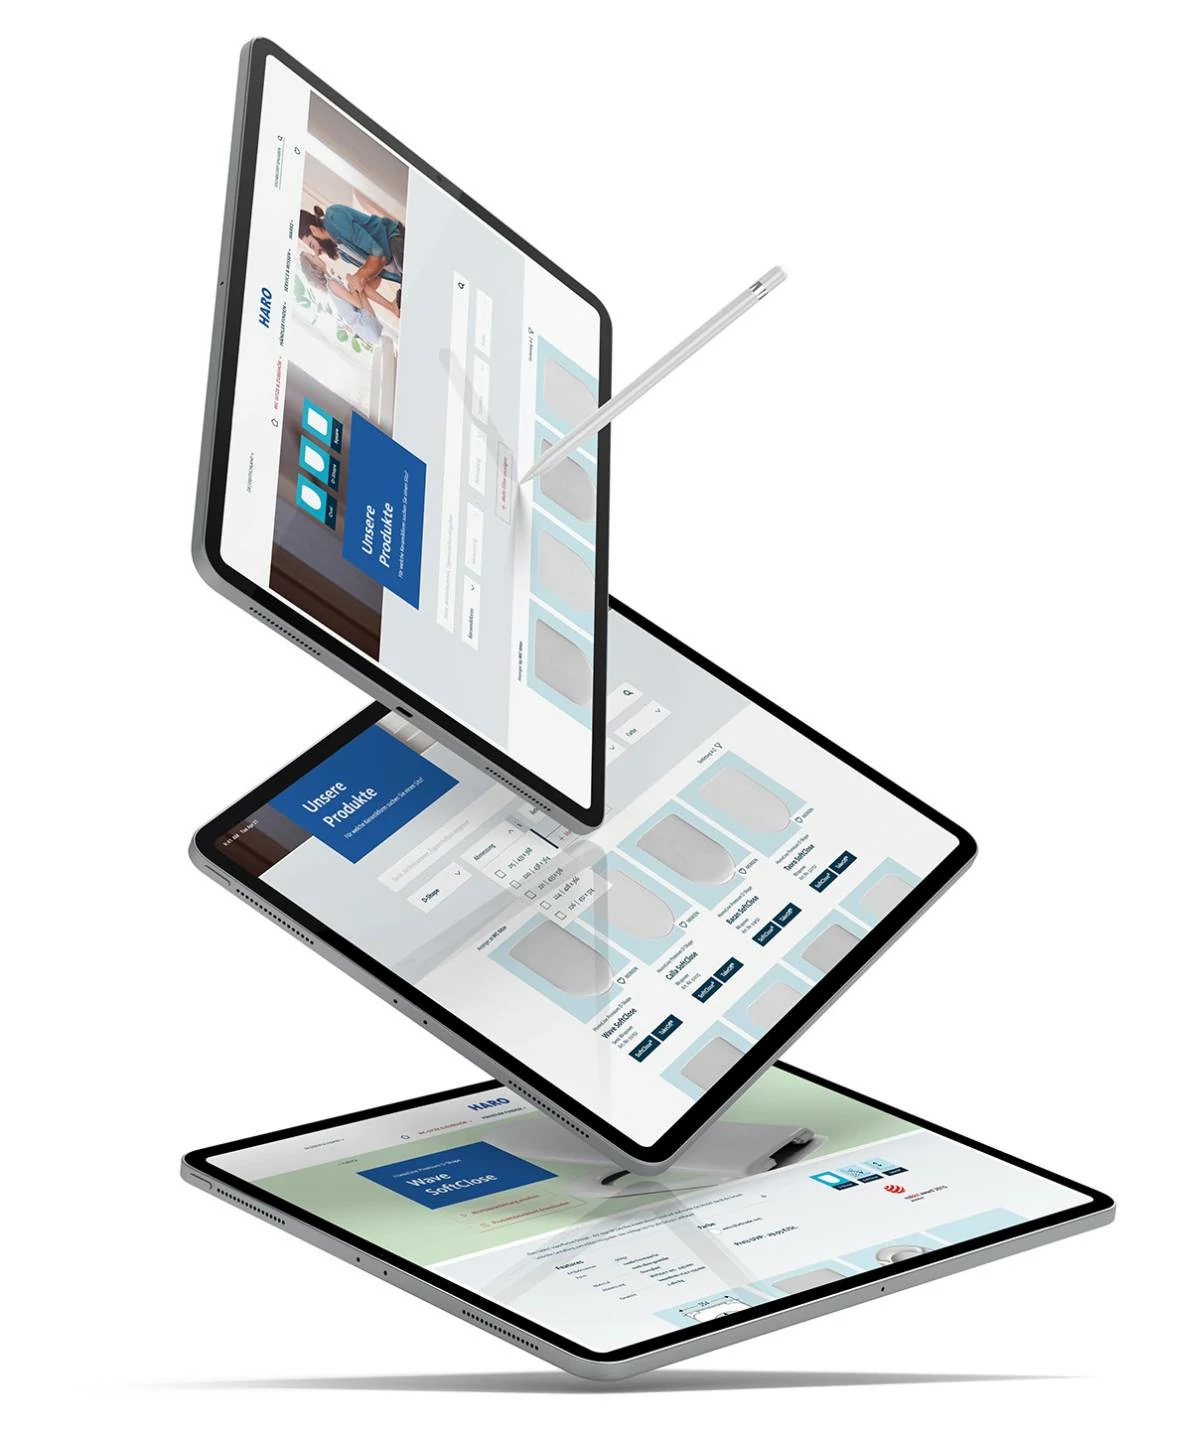 Produktfinder Details - Darstellung in einem iPad Pro